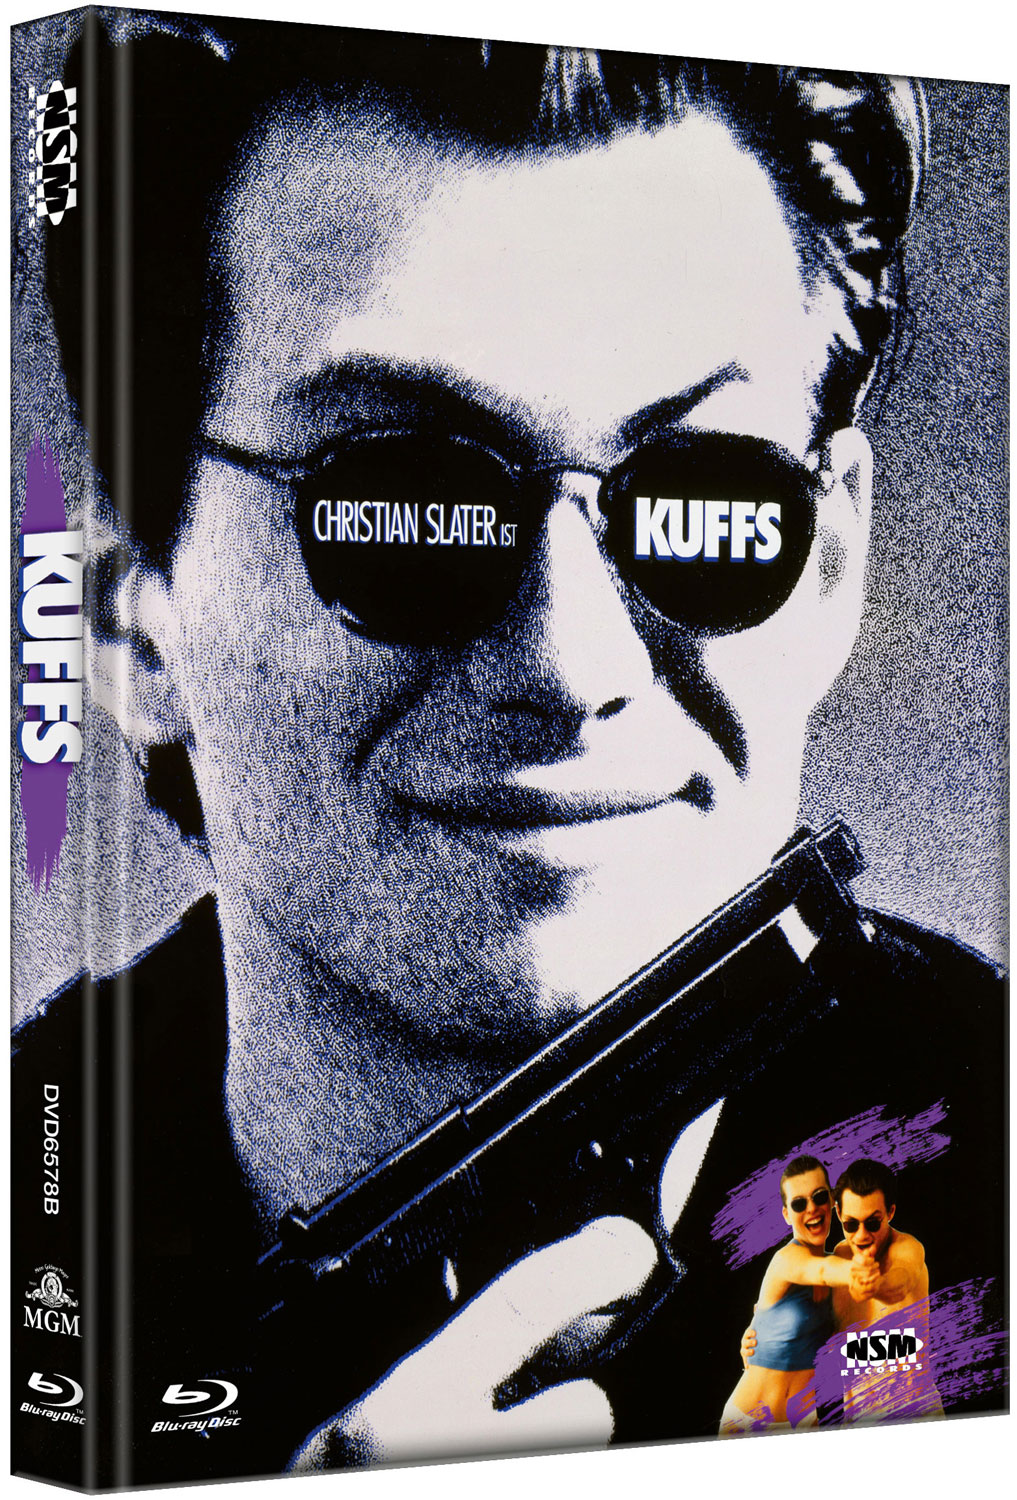 KUFFS - EIN KERL ZUM SCHIESSEN (Blu-Ray+DVD) - Cover B - Mediabook - Limited 99 Edition